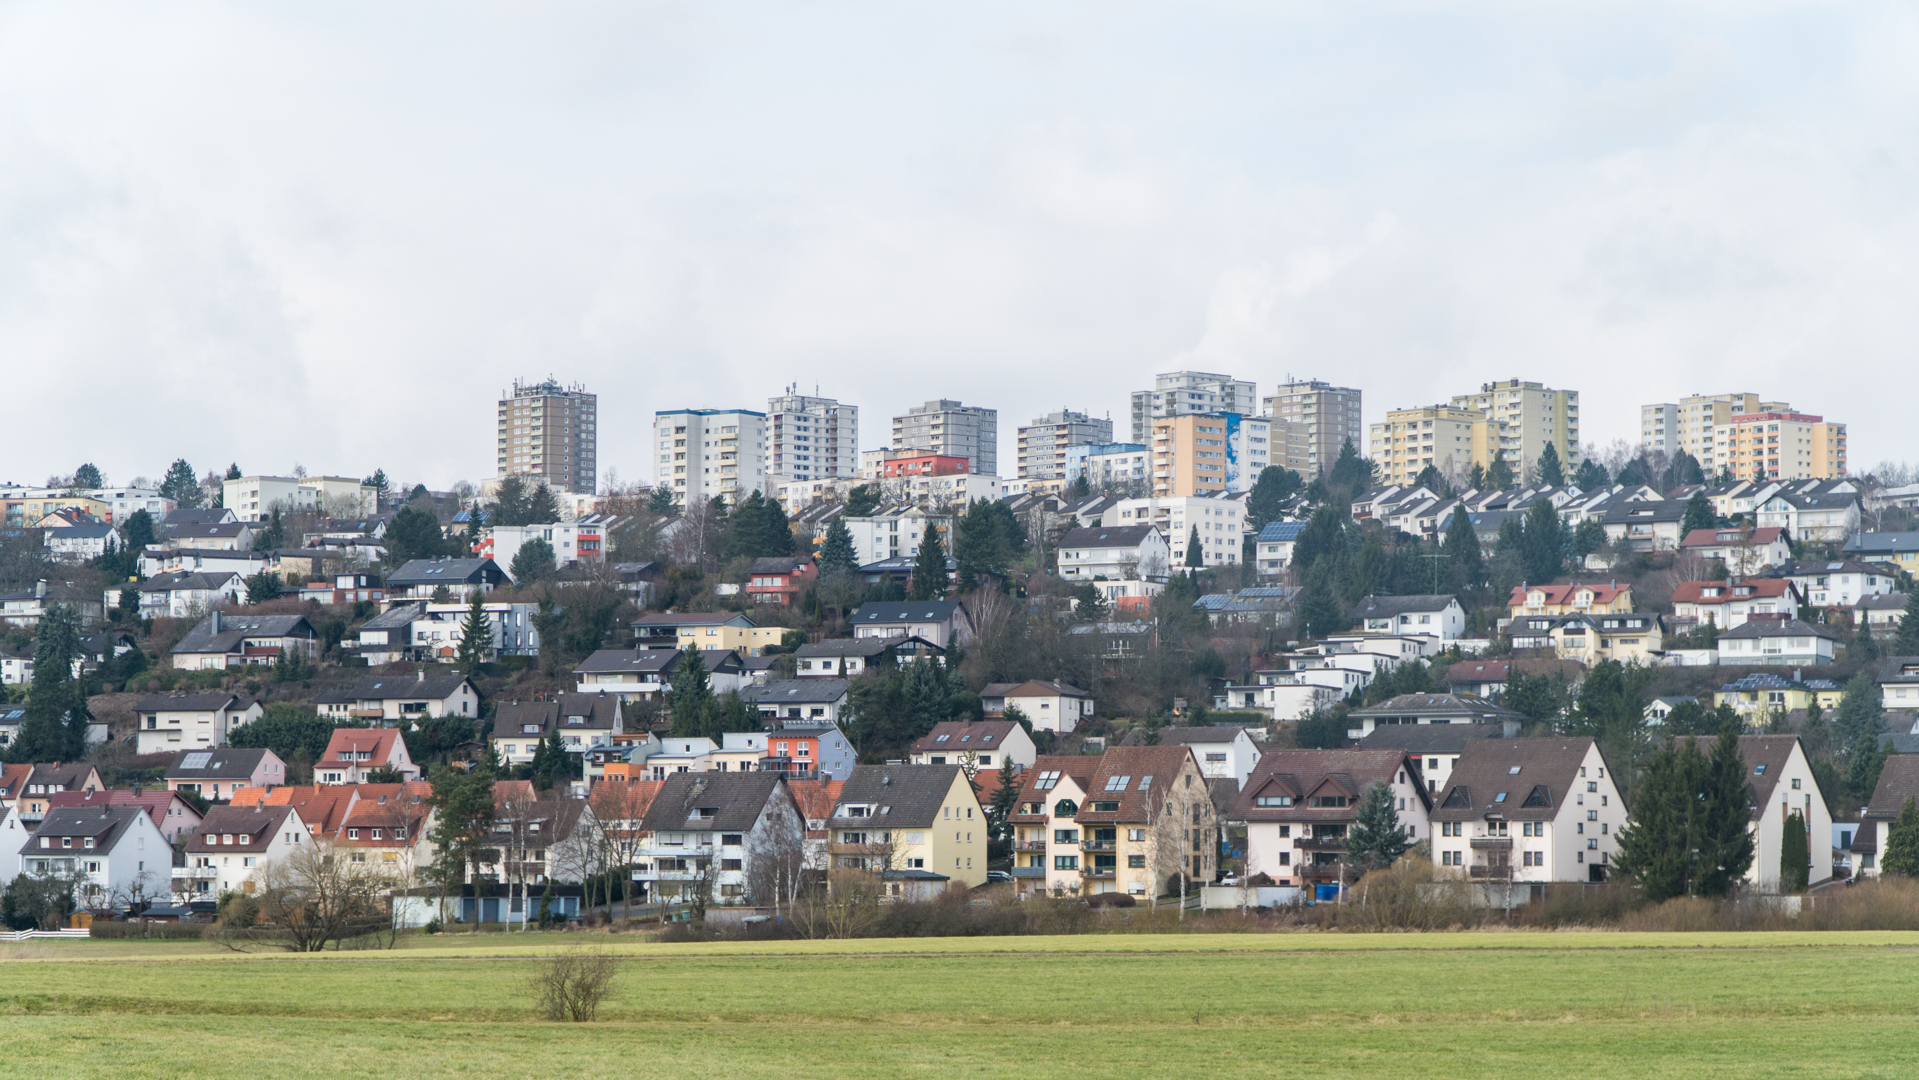 Die Hochhäuser prägen das Bild des Aschenbergs. Doch wie lebt es sich da wirklich?